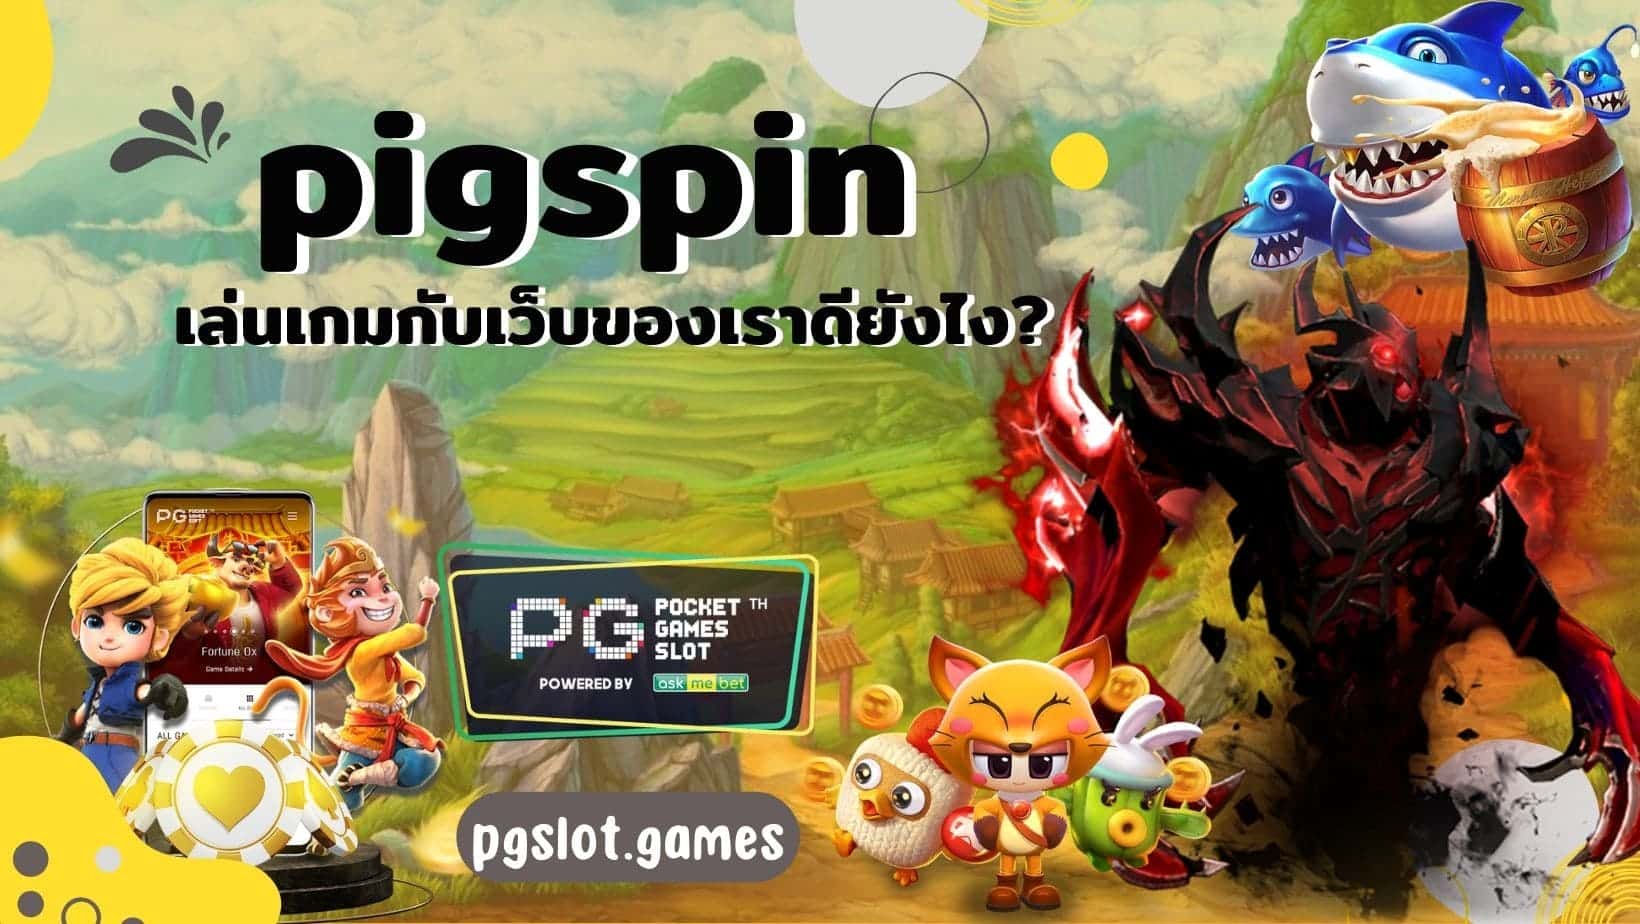 pigspin เล่นเกมกับเว็บของเราดียังไง